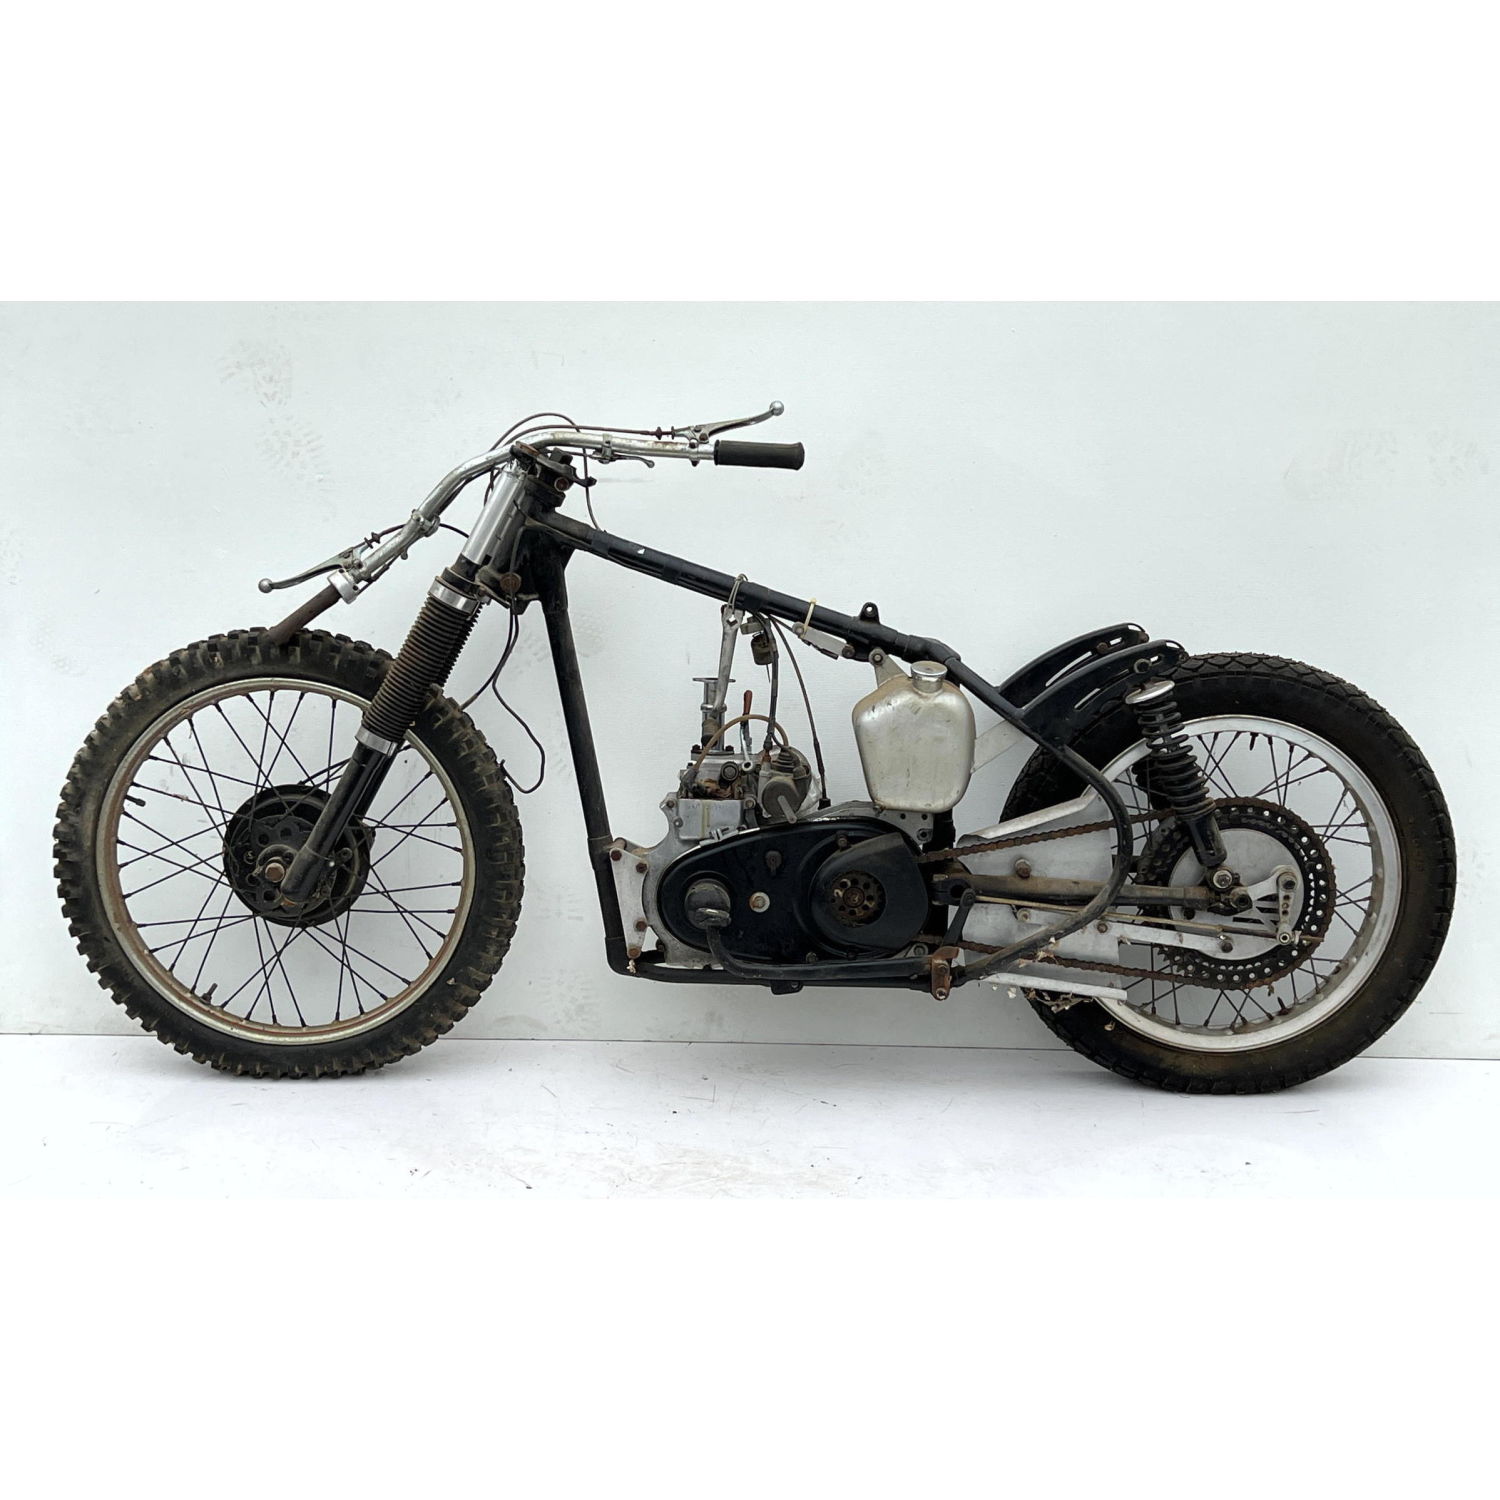 Vintage motorcycle. 

Dimensions: